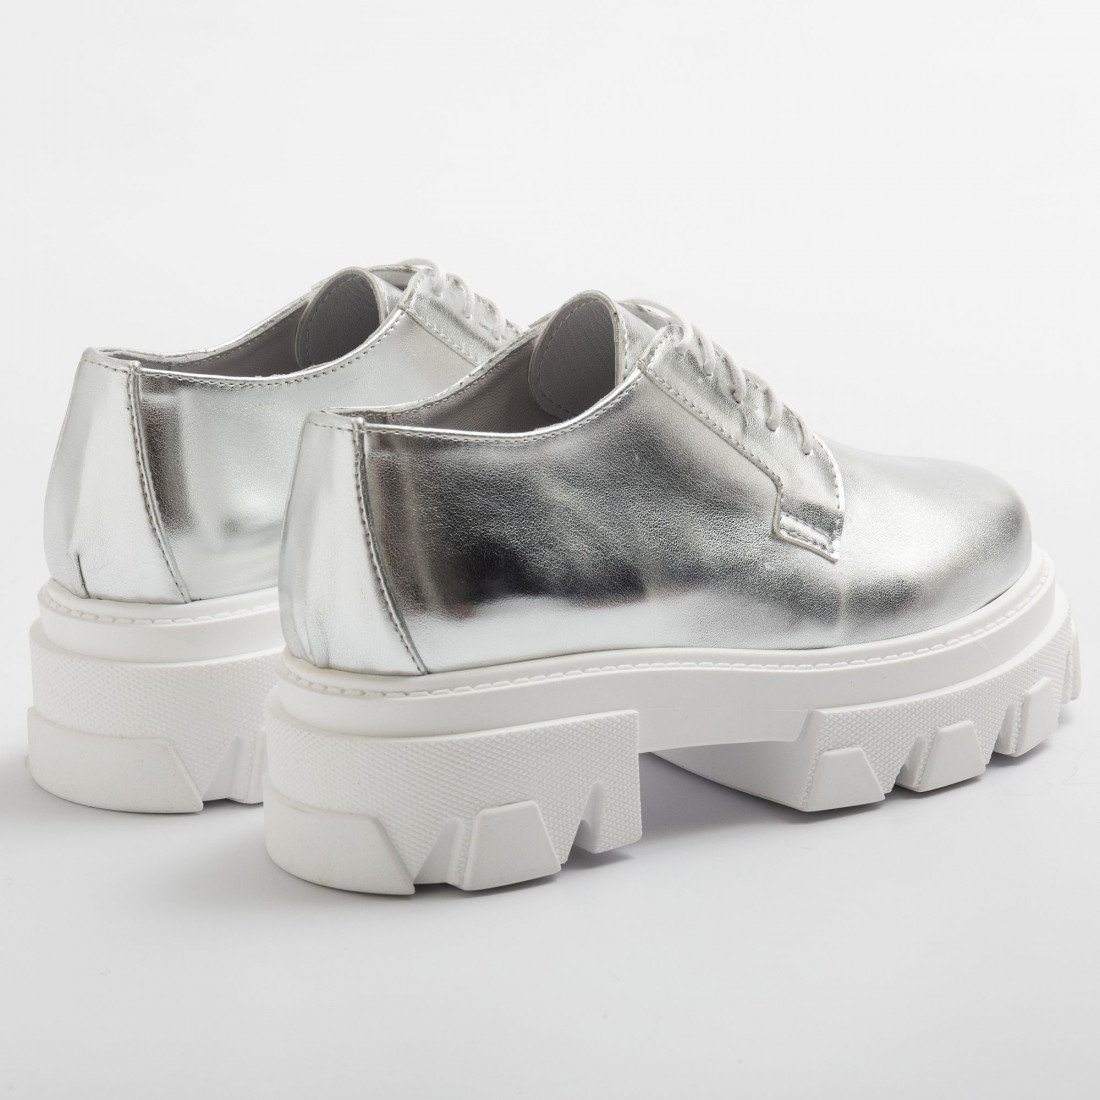 Combat dames derby schoenen in zilver metallic leer